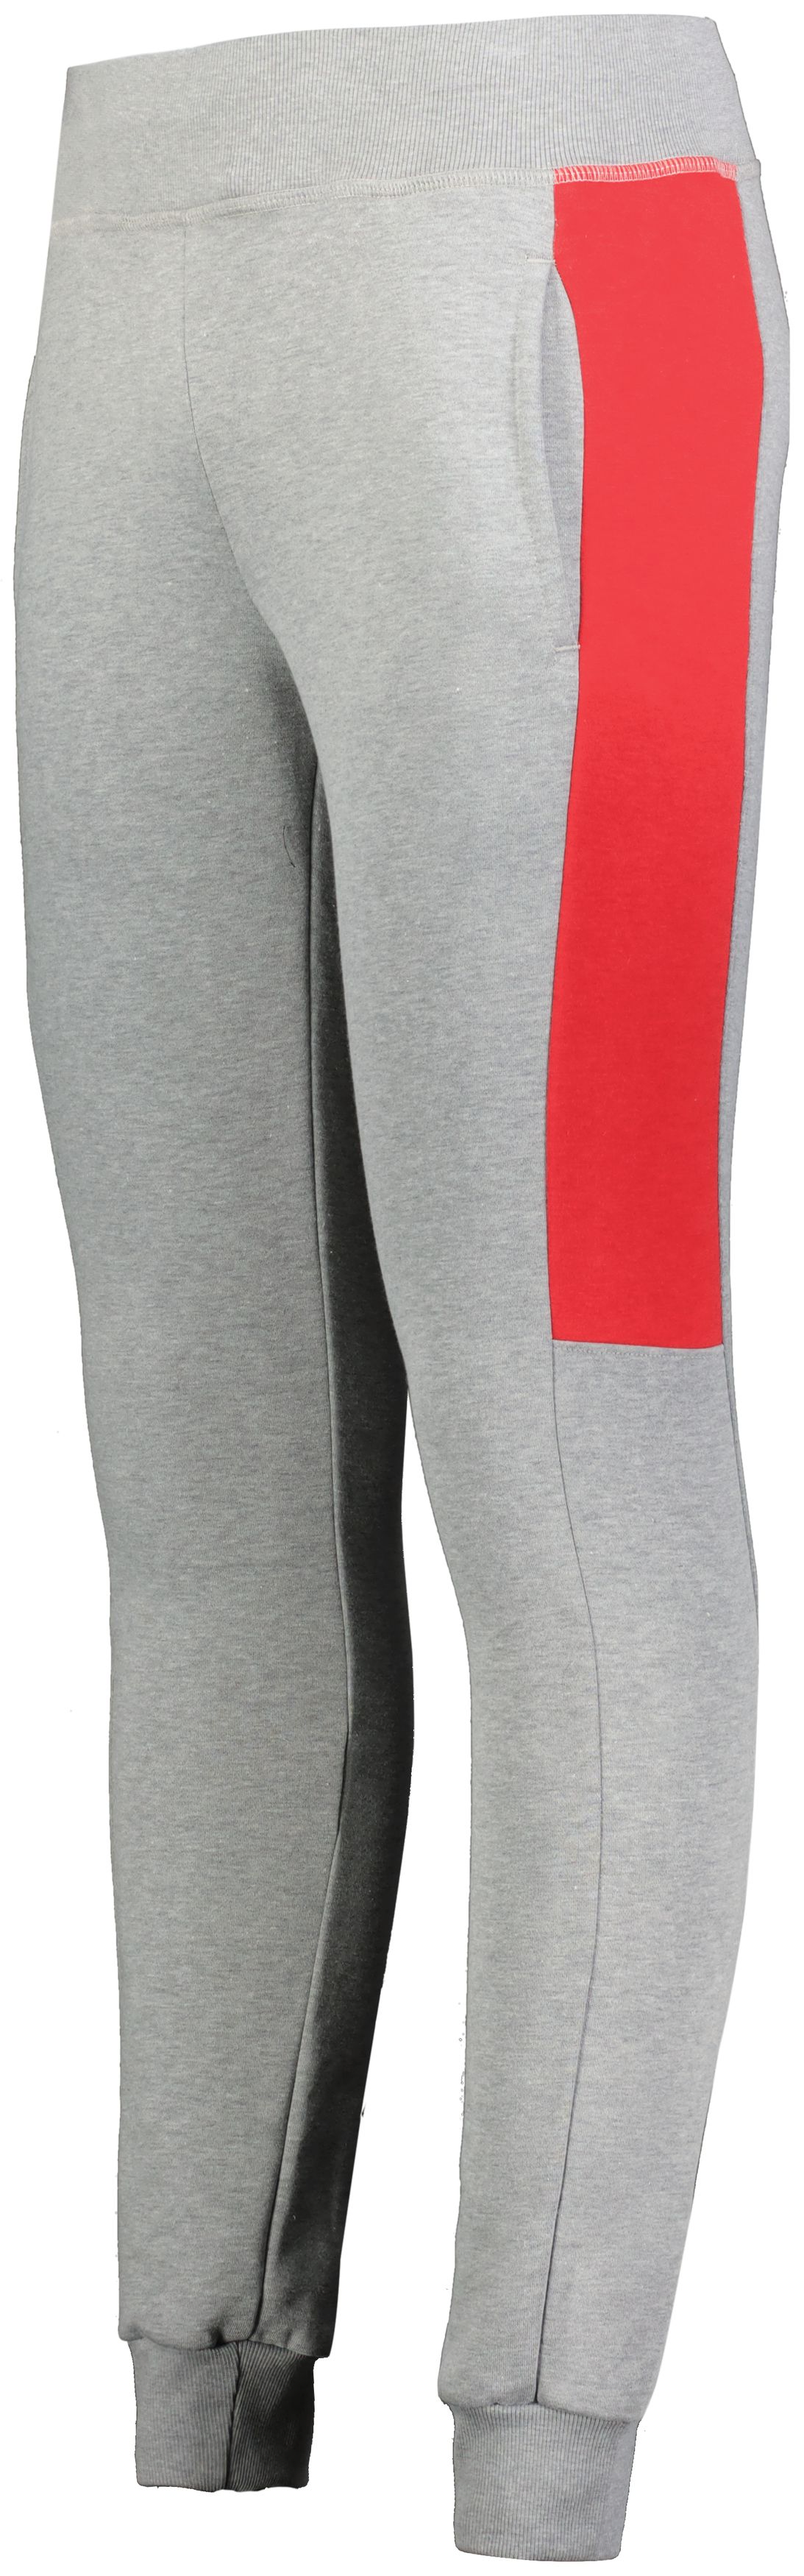 Pants/Capris  Augusta Sportswear Brands